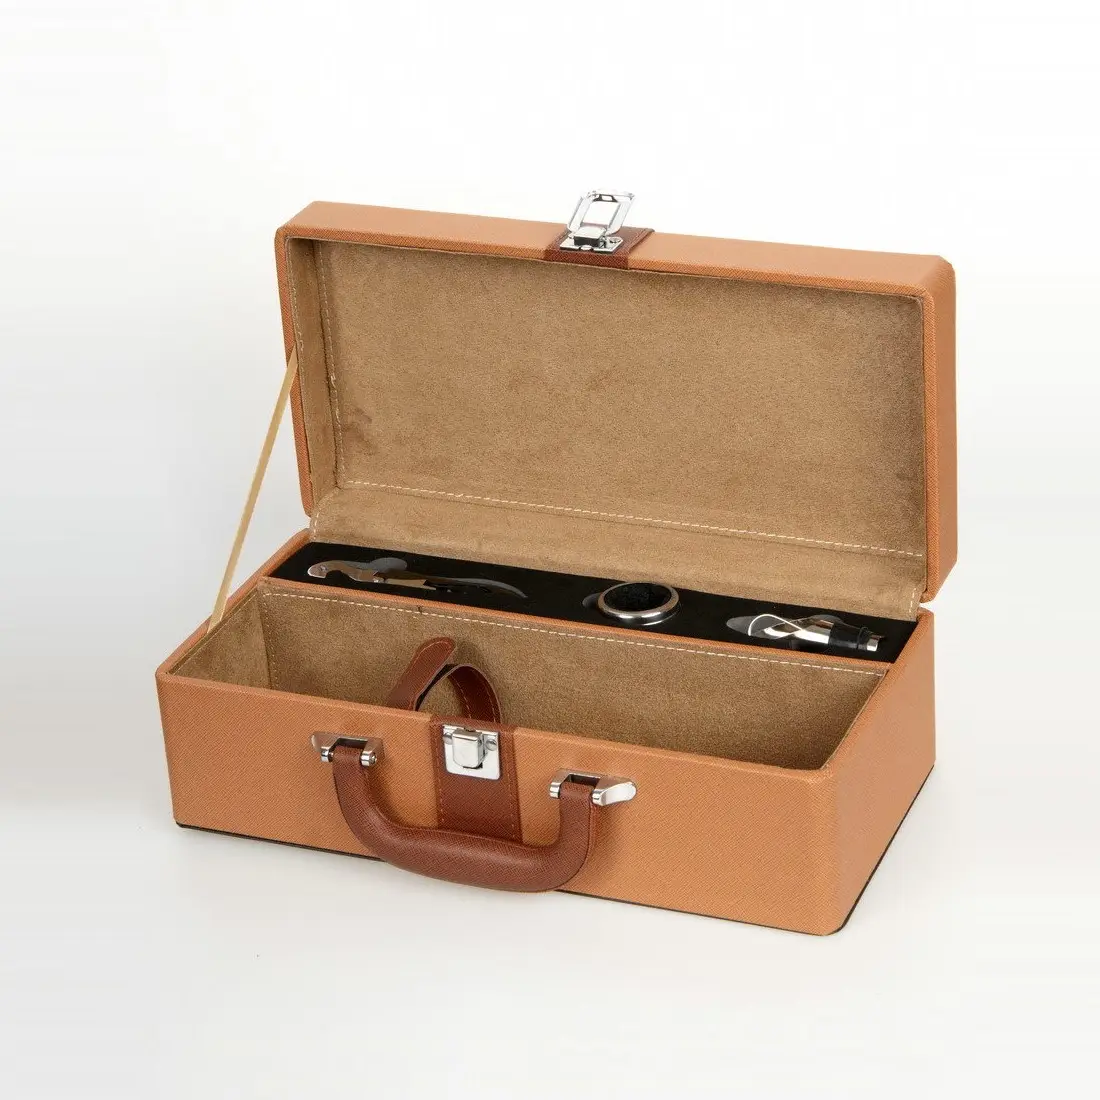 Caixa de madeira com logotipo personalizado de luxo personalizado do fabricante, caixa de madeira com tampa deslizante para caixa de vinho tinto, pacote de presente